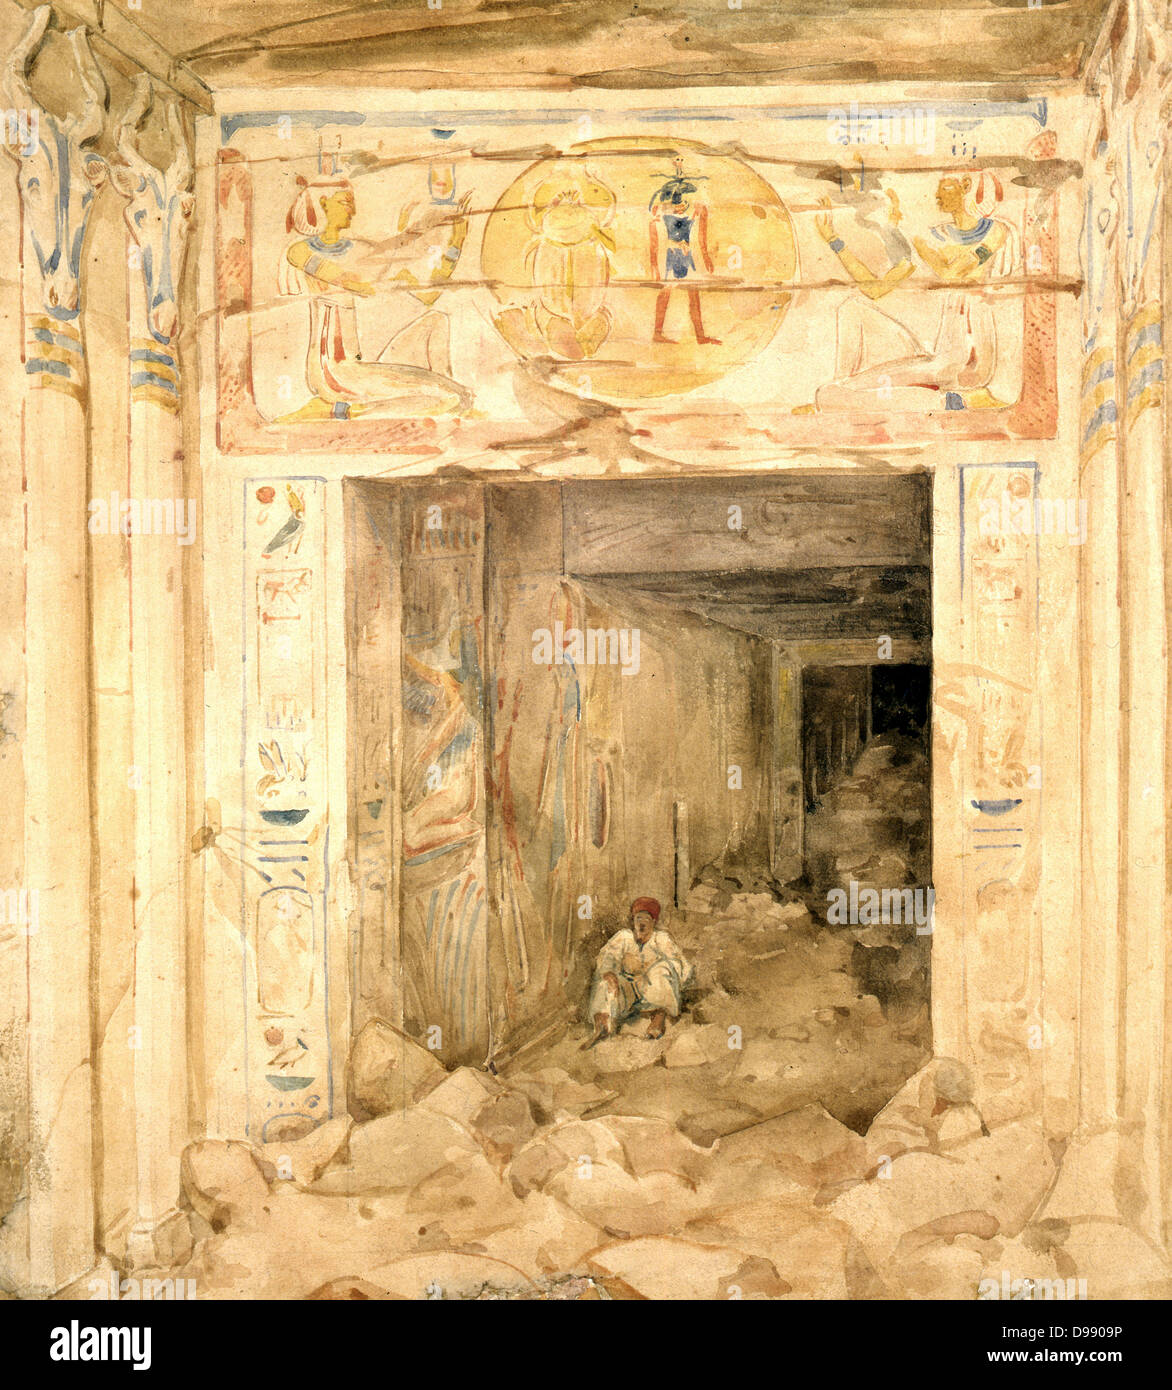 Zerstörte Innenraum der Tempel von Esneh (esne), Oberägypten. Aquarell von Hector Horeau (1801-1872), französischer Architekt. Alte Eyptian Archäologie Stockfoto